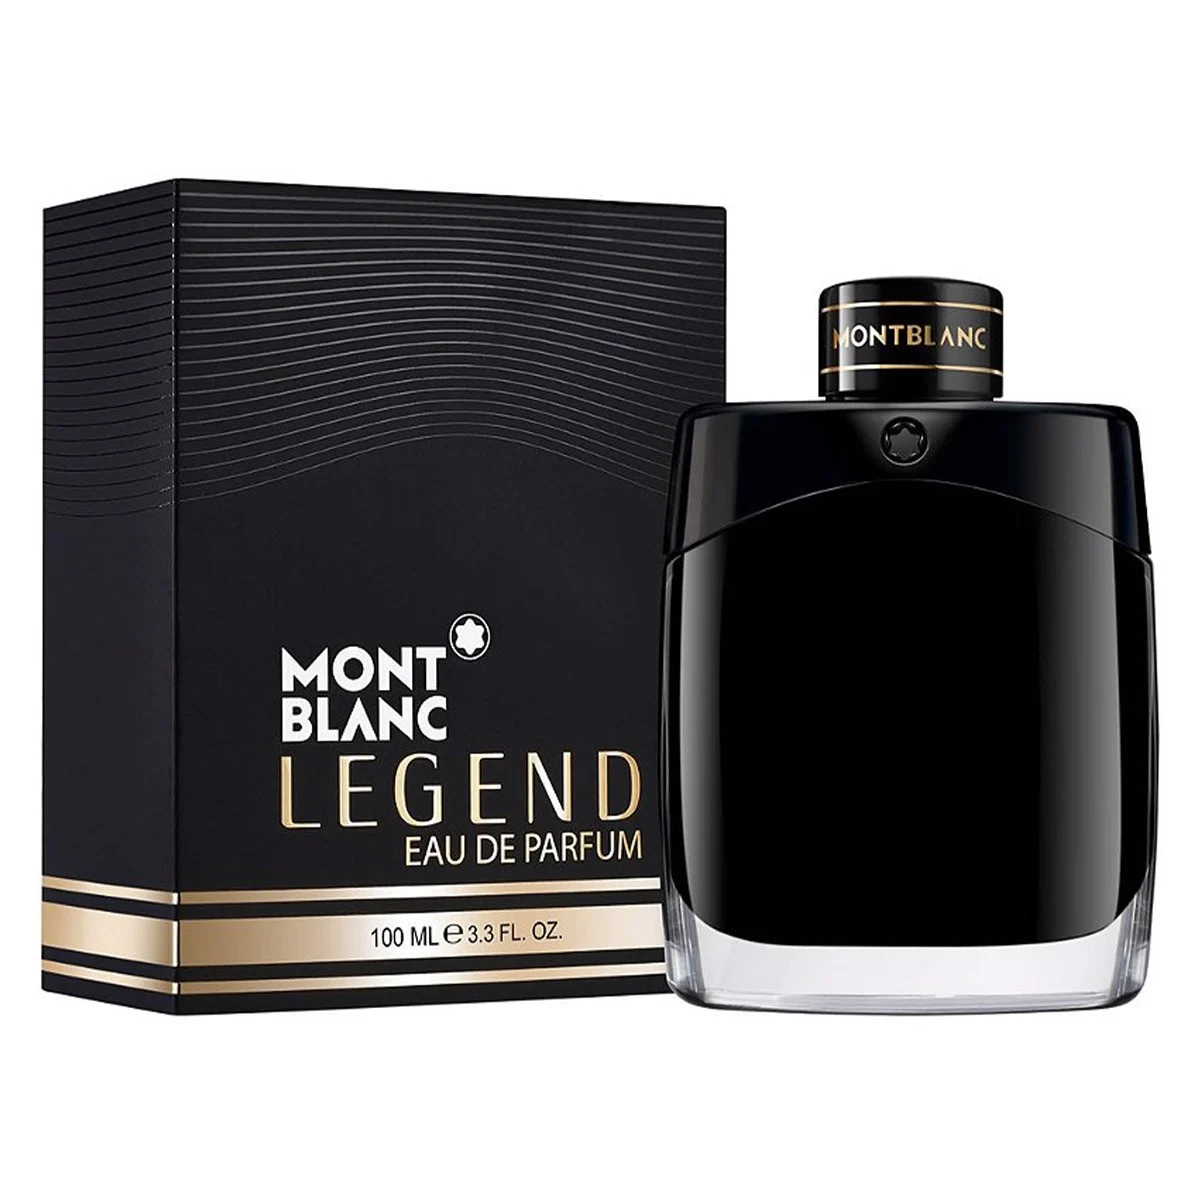 Montblanc Legend Eau de Parfum 100ML